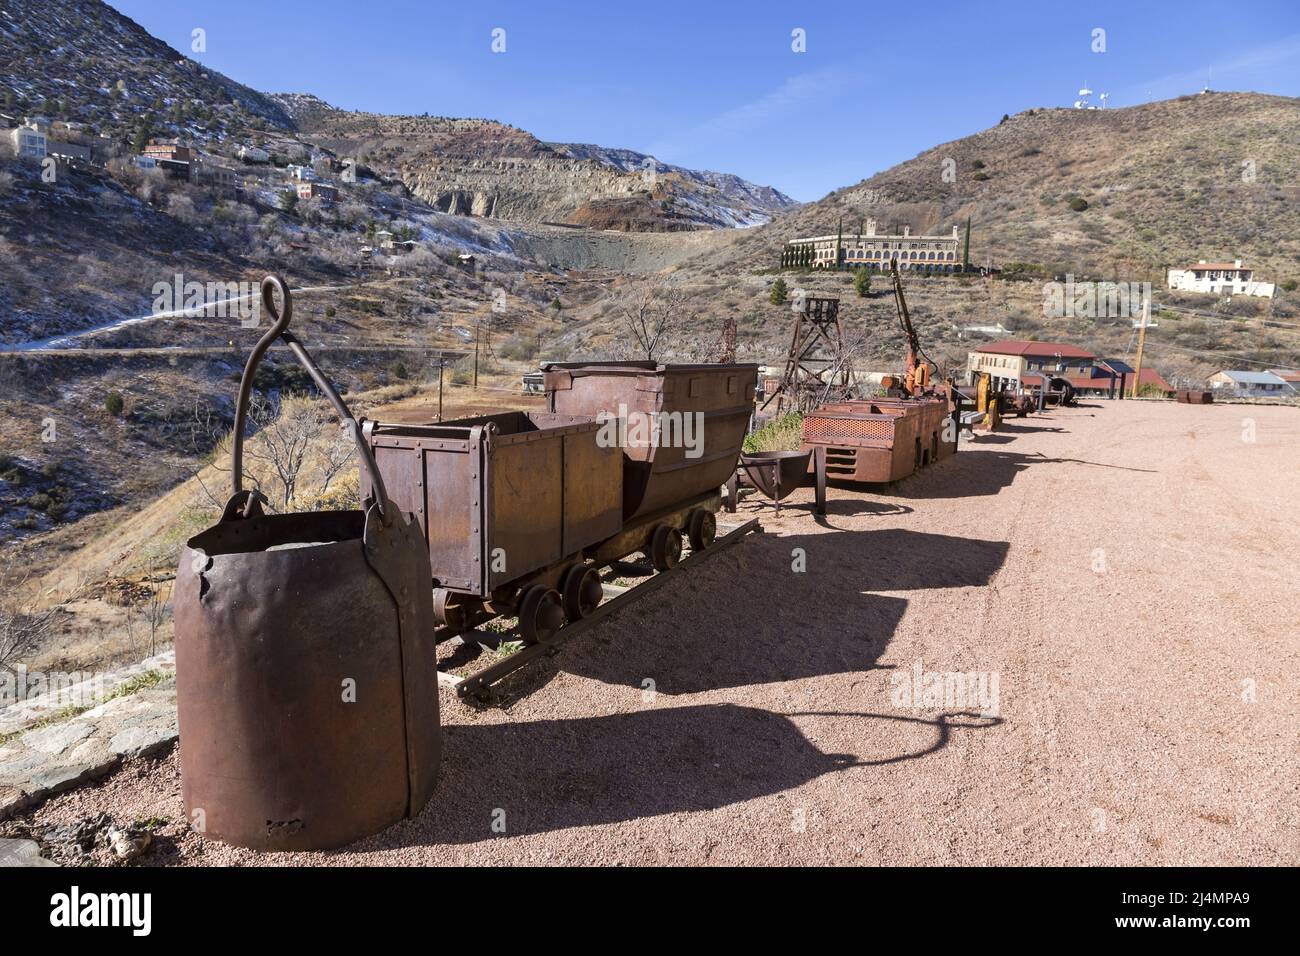 Equipo de carro de minería de cobre antiguo con incrustaciones vintage frente al famoso centro de visitantes del Parque Histórico del Estado de Jerome en Arizona Foto de stock